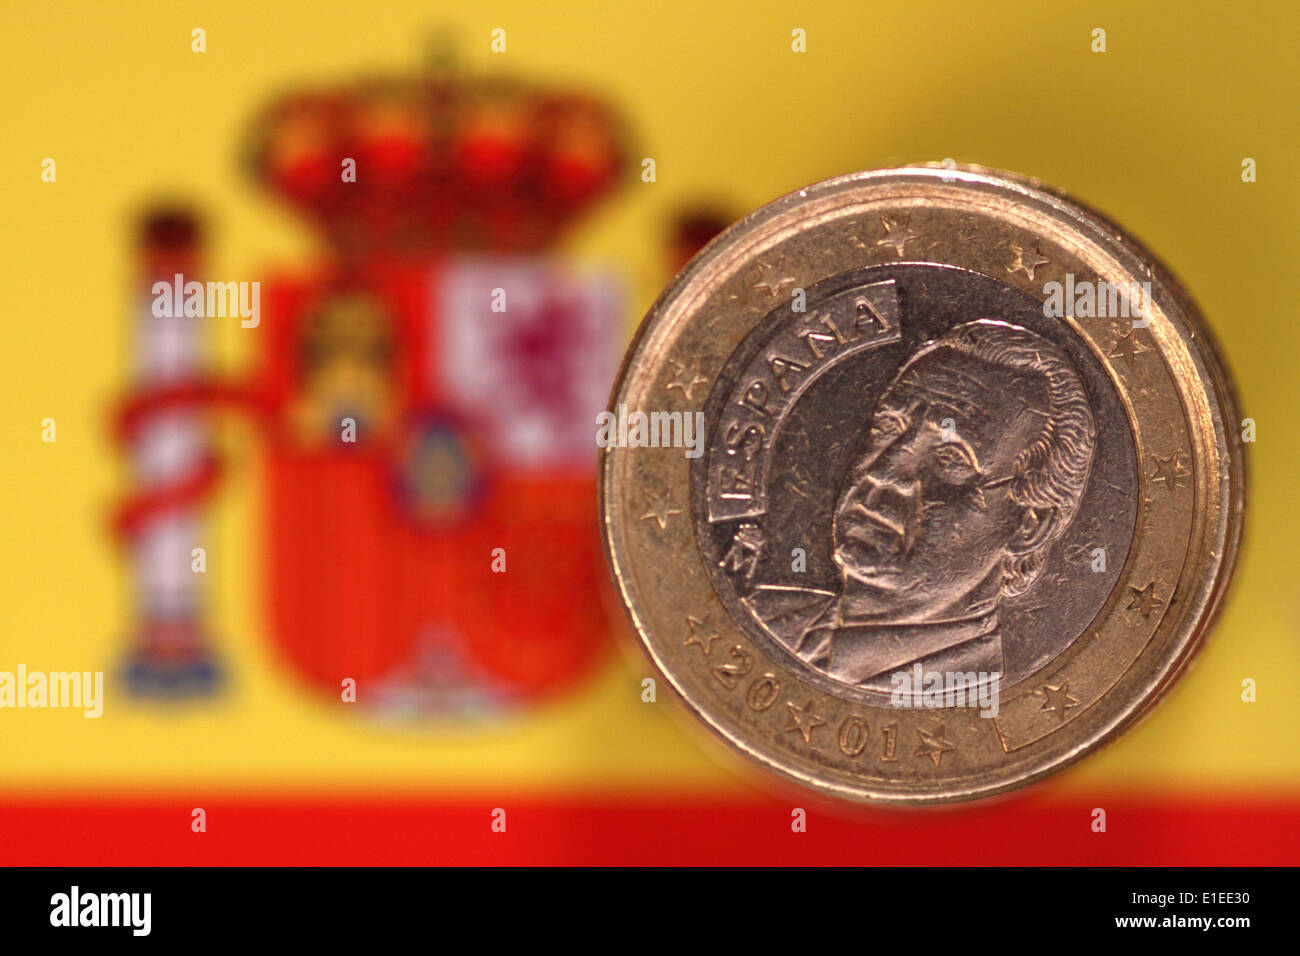 Lo spagnolo Euro moneta (retro) con un ritratto di Re Juan Carlos Foto Stock